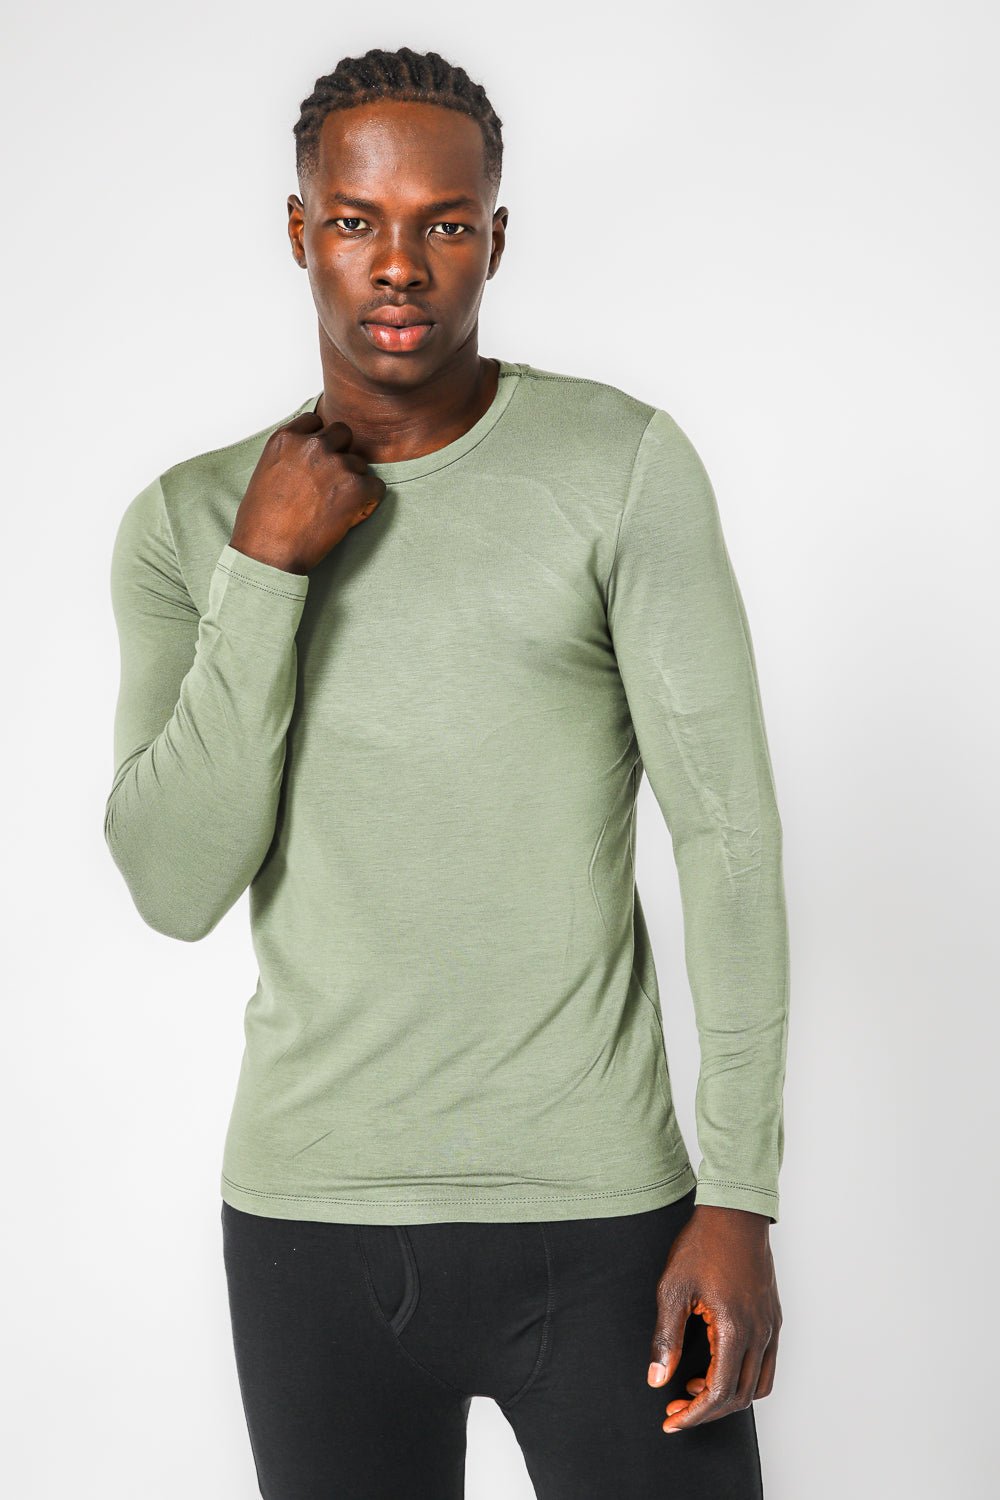 DELTA - חולצה תרמית צווארון עגול - SLIM FIT בצבע ירוק - MASHBIR//365